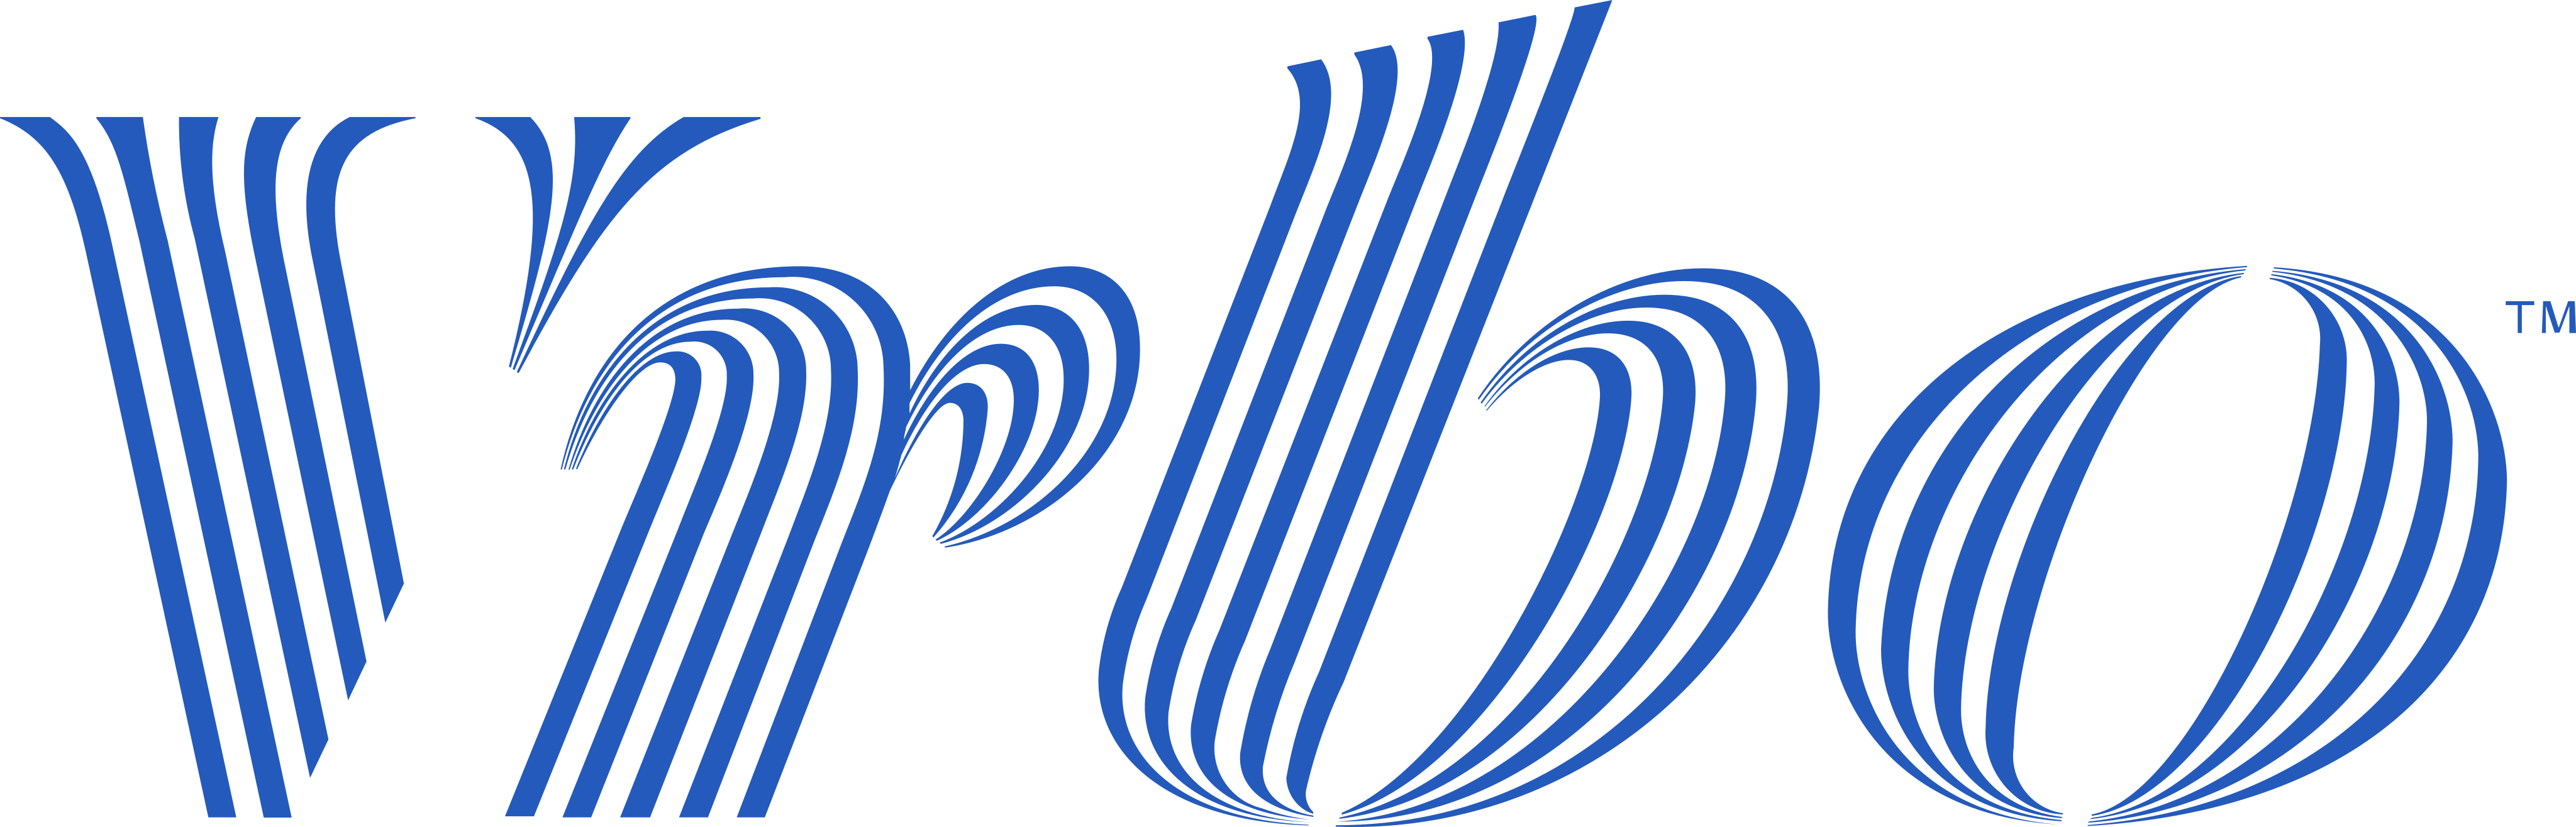 Vrbo-logo